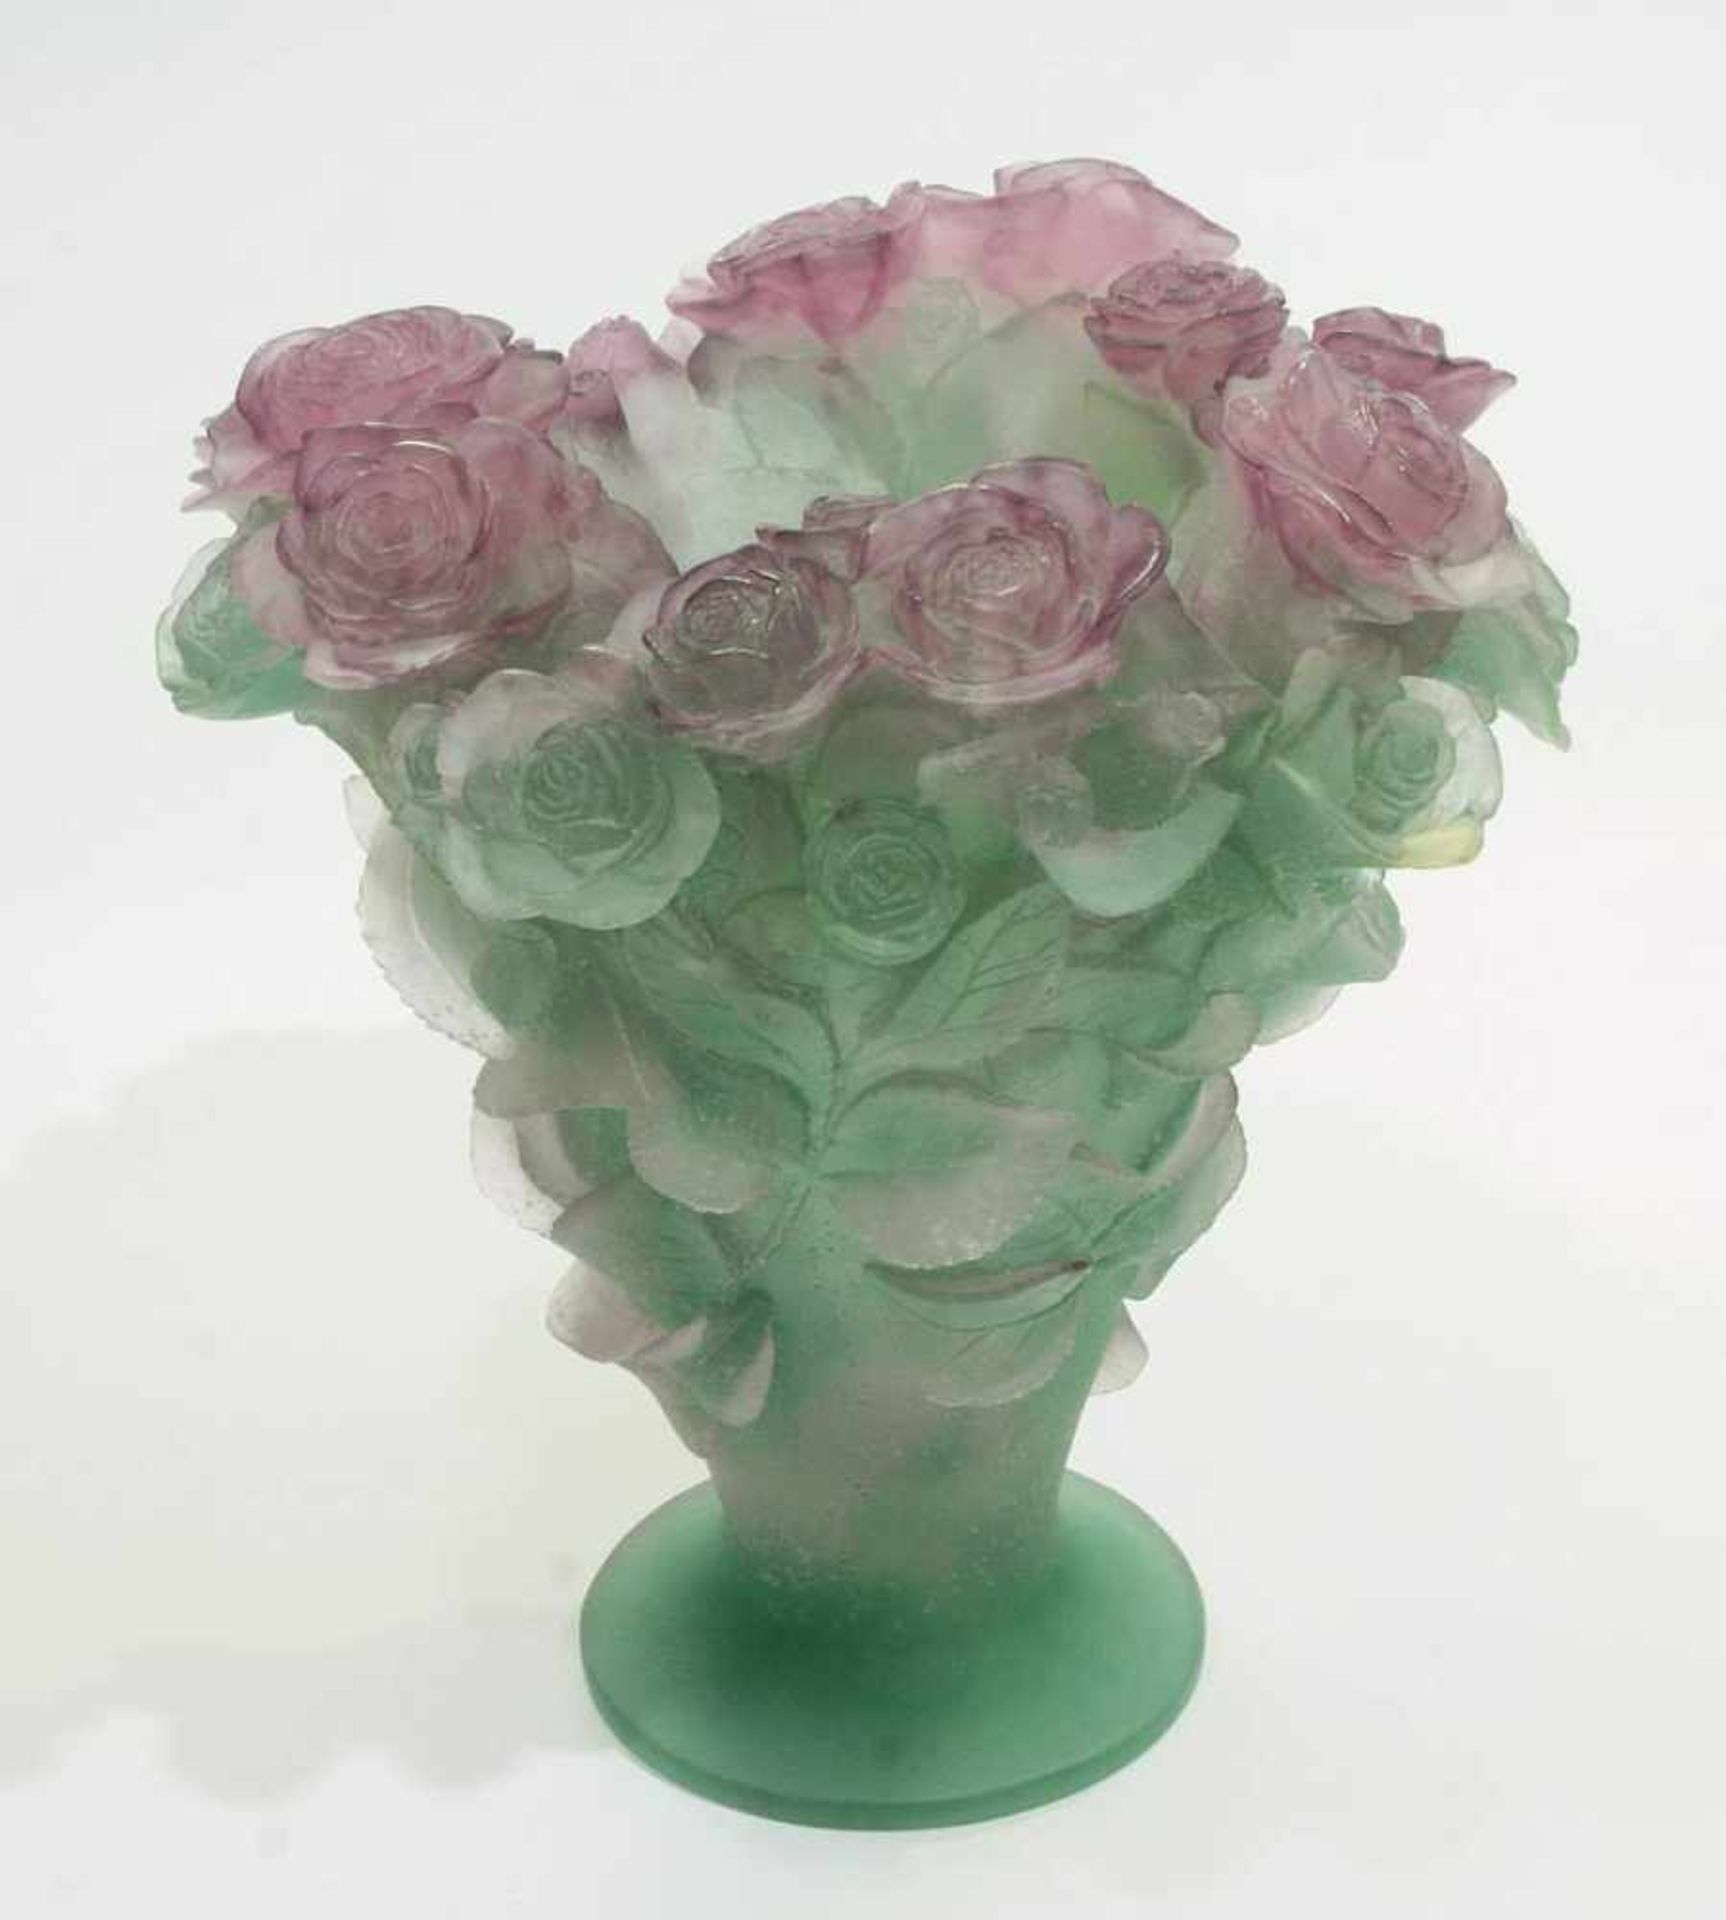 DAUM Pate-de-Verre "Roses" Vase. France. DAUM Pate-de-Verre "Roses" Vase. France. 20. Jahrhundert. - Bild 3 aus 6